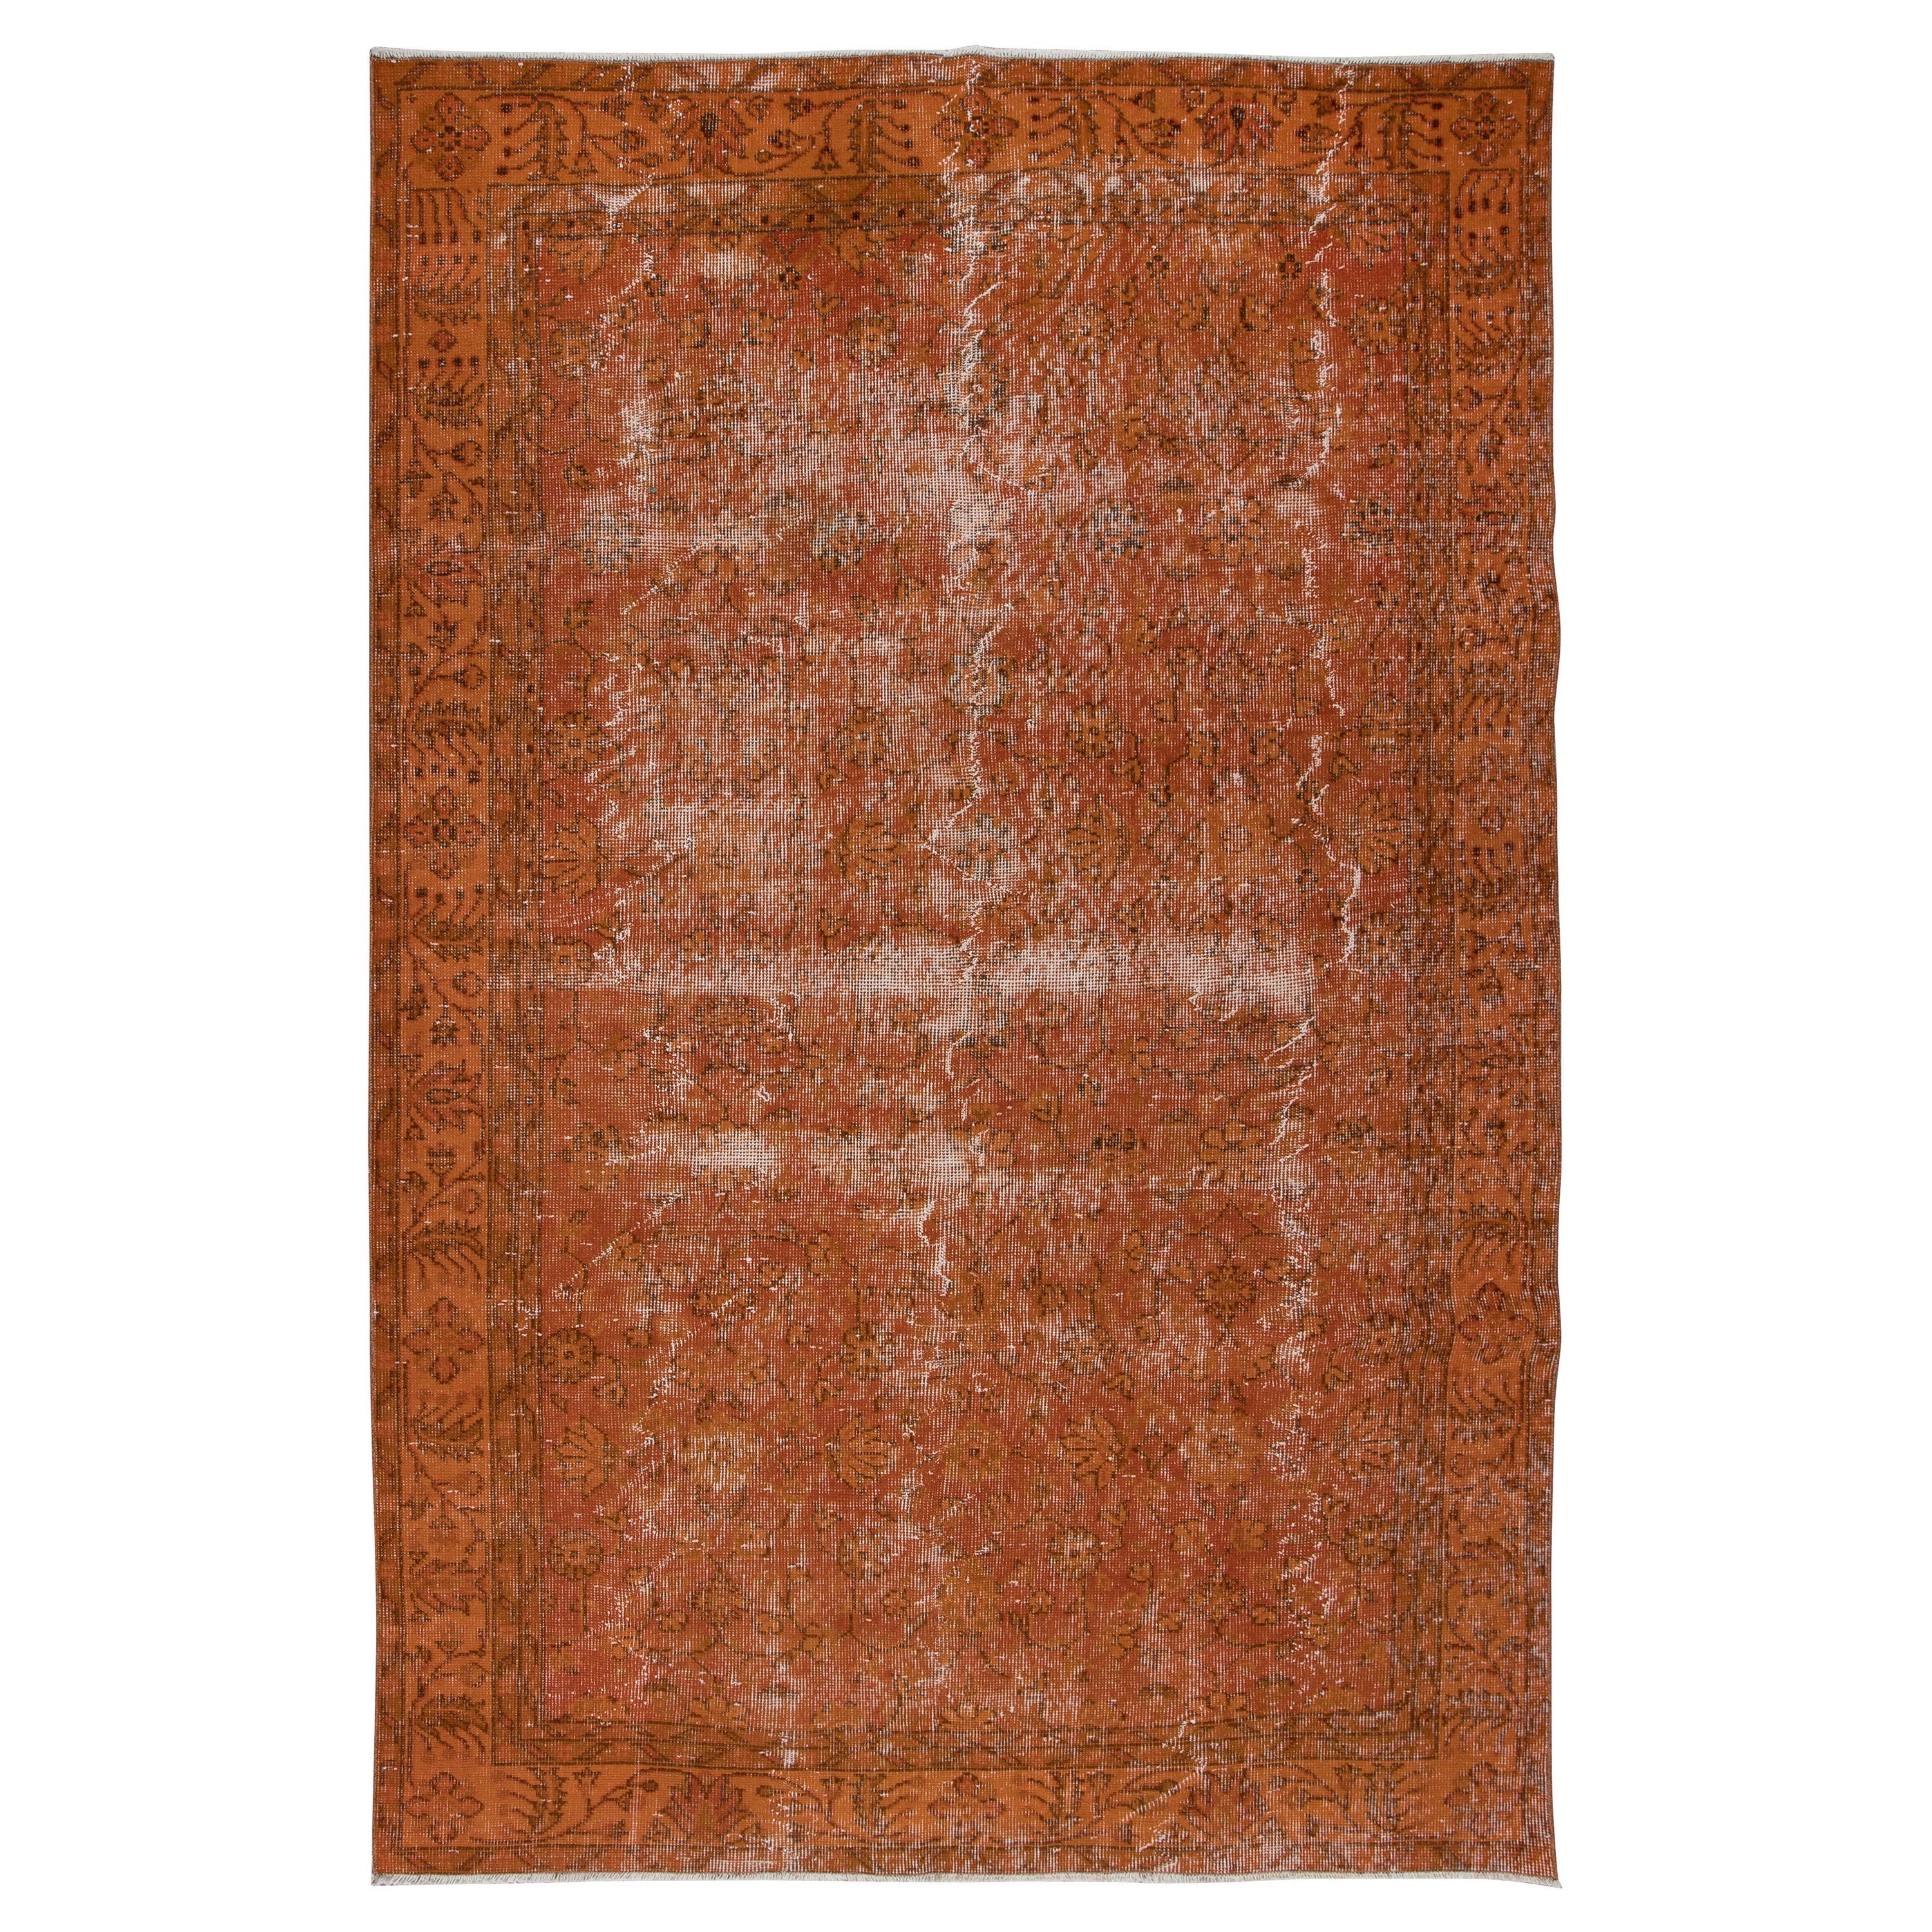 5.8x8.7 Ft Dekorativer handgefertigter türkischer Teppich in Orange mit Shabby Chic-Stil